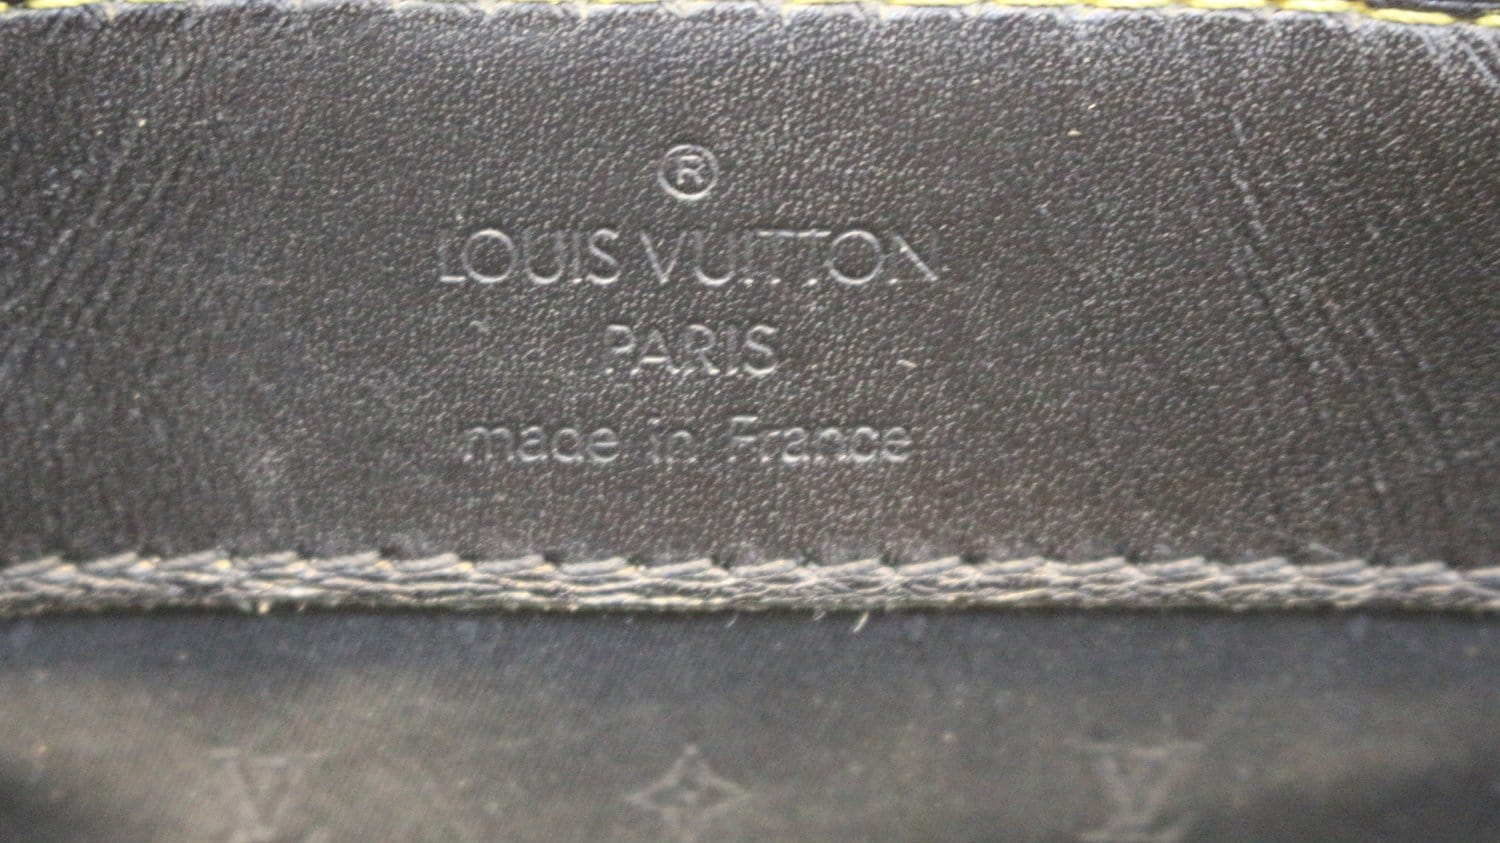 Louis Vuitton M91820 Black Suhali Goat Leather Le Talentueux Shoulder Bag  (LM0023)